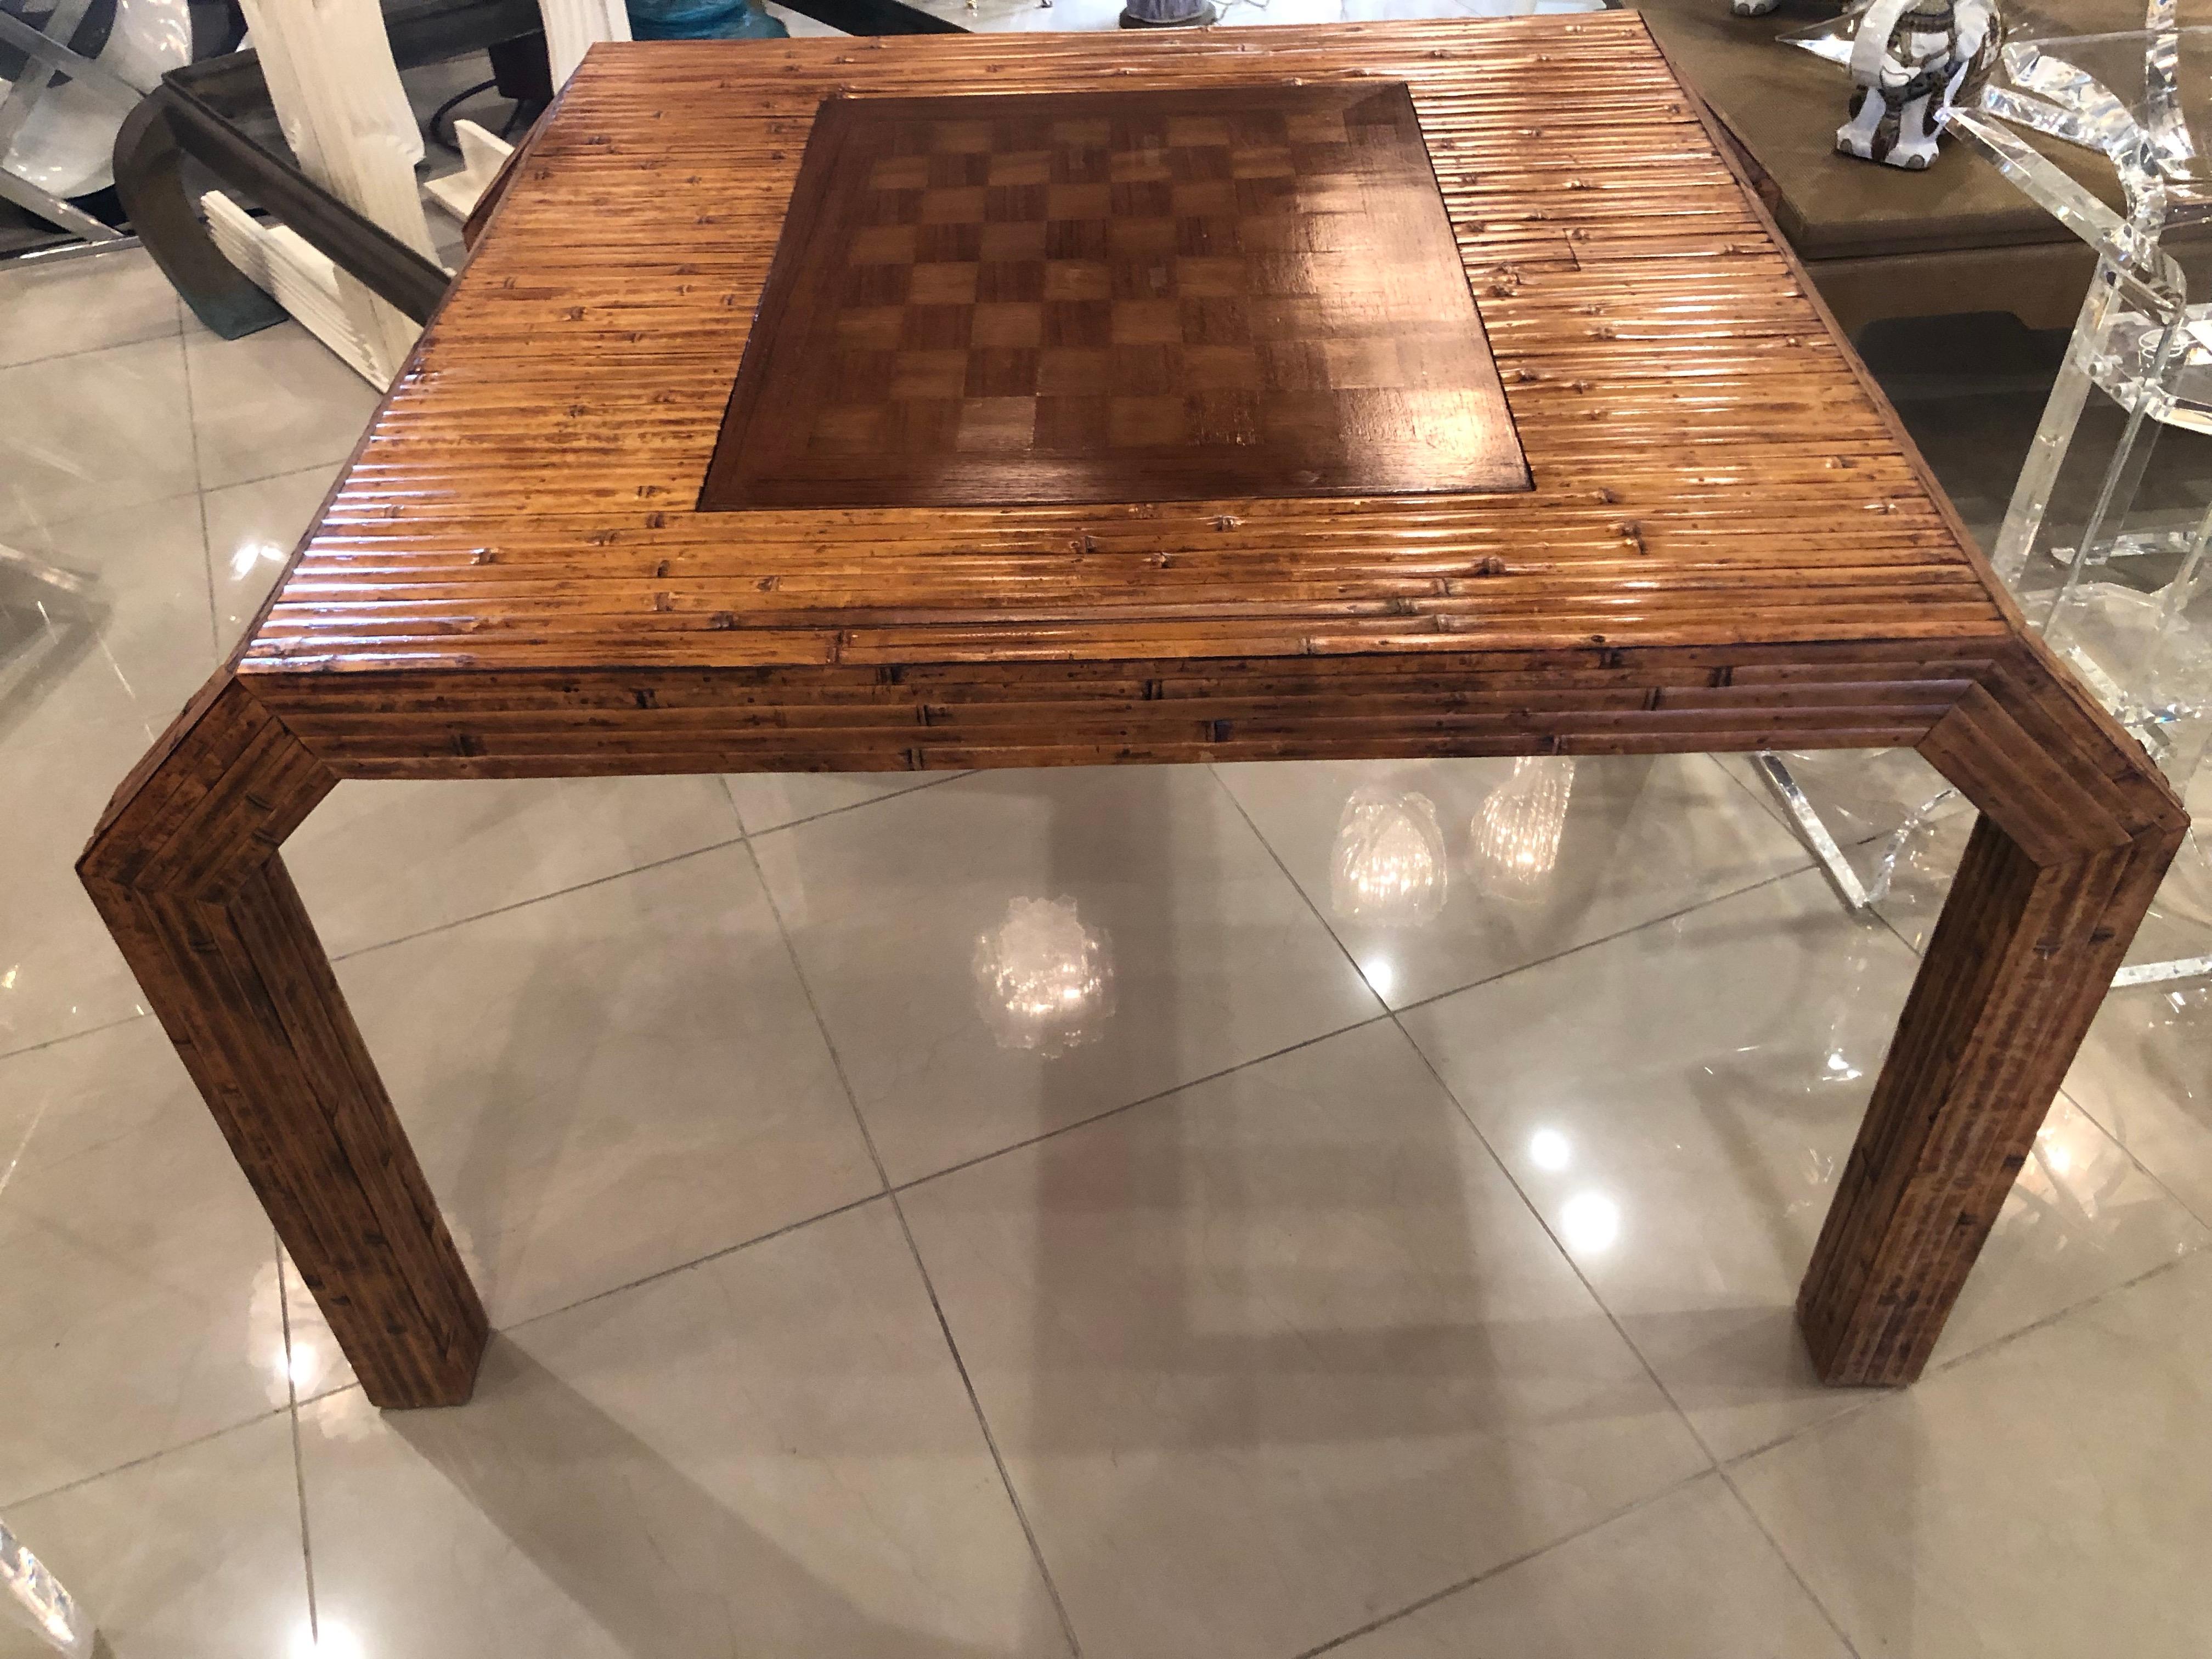 Das ist ein toller Spieltisch! Wunderschöne flache Bambusrohrstücke, unglaubliche Ausbuchtungen und Details an den Beinen verleihen diesem Stuhl einen frischen, modernen Look. Das Spielbrett kann umgedreht werden, so dass der Tisch auch ohne das